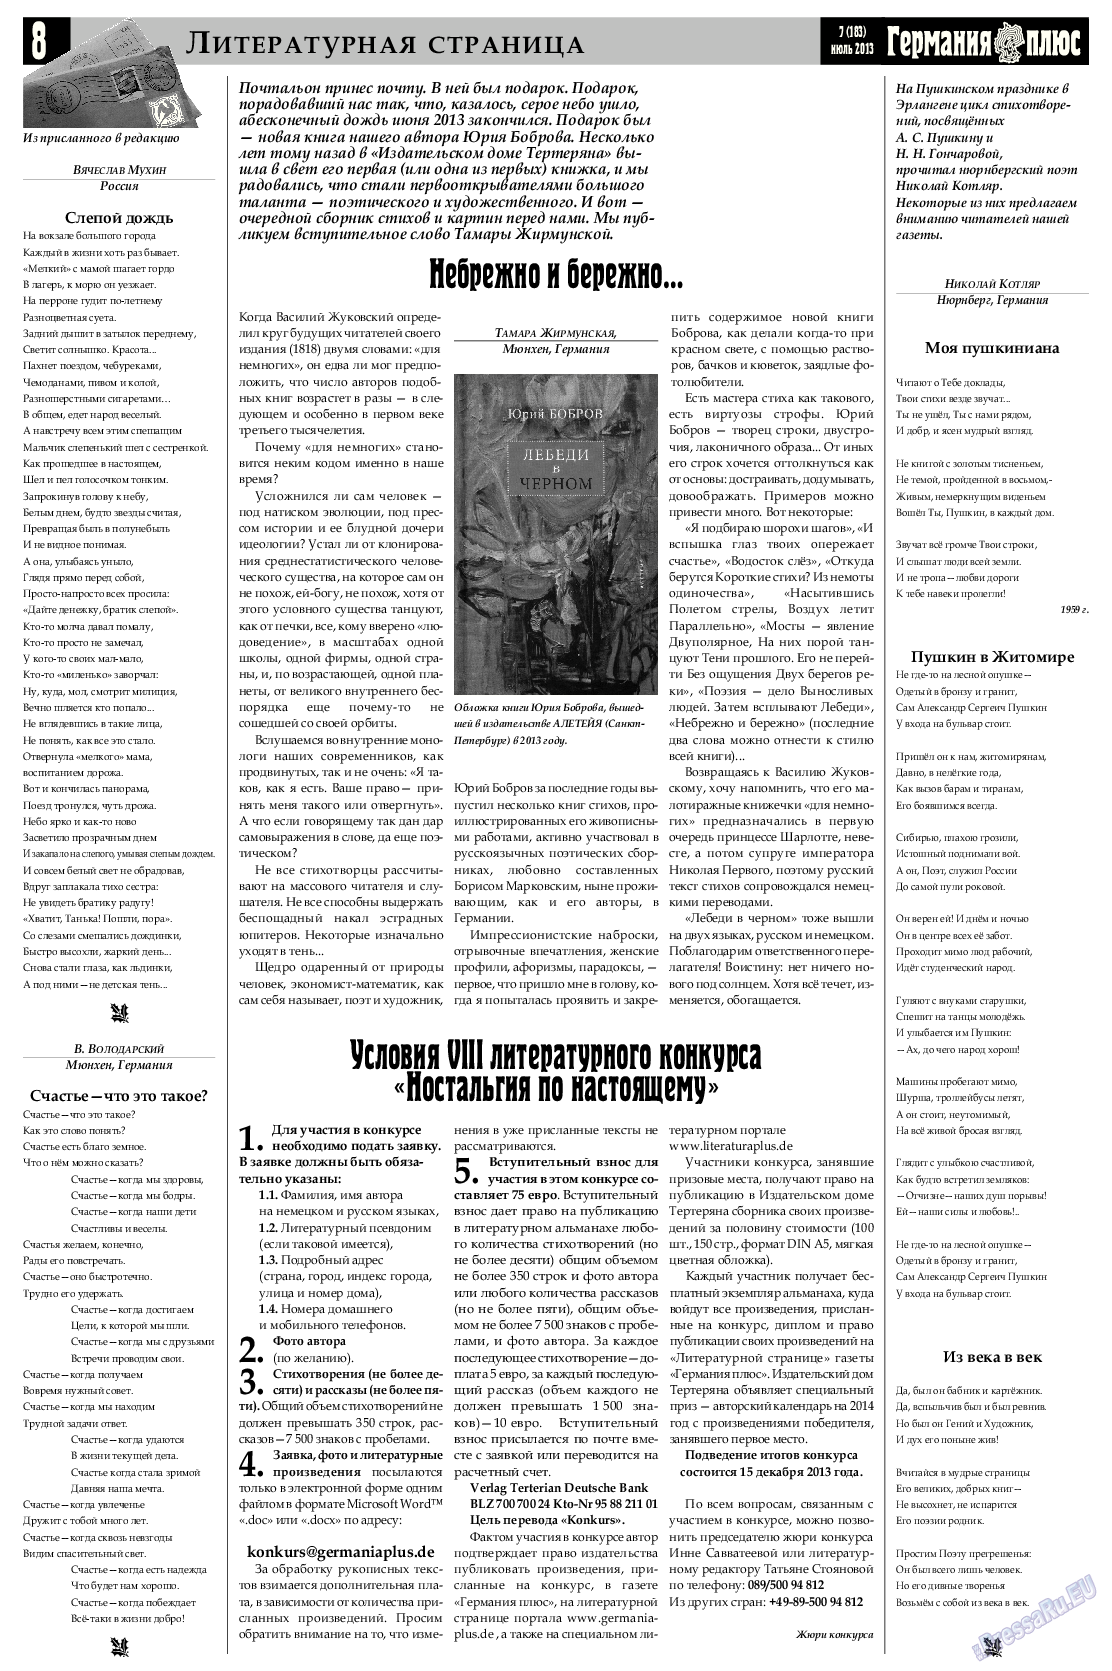 Германия плюс (газета). 2013 год, номер 7, стр. 8